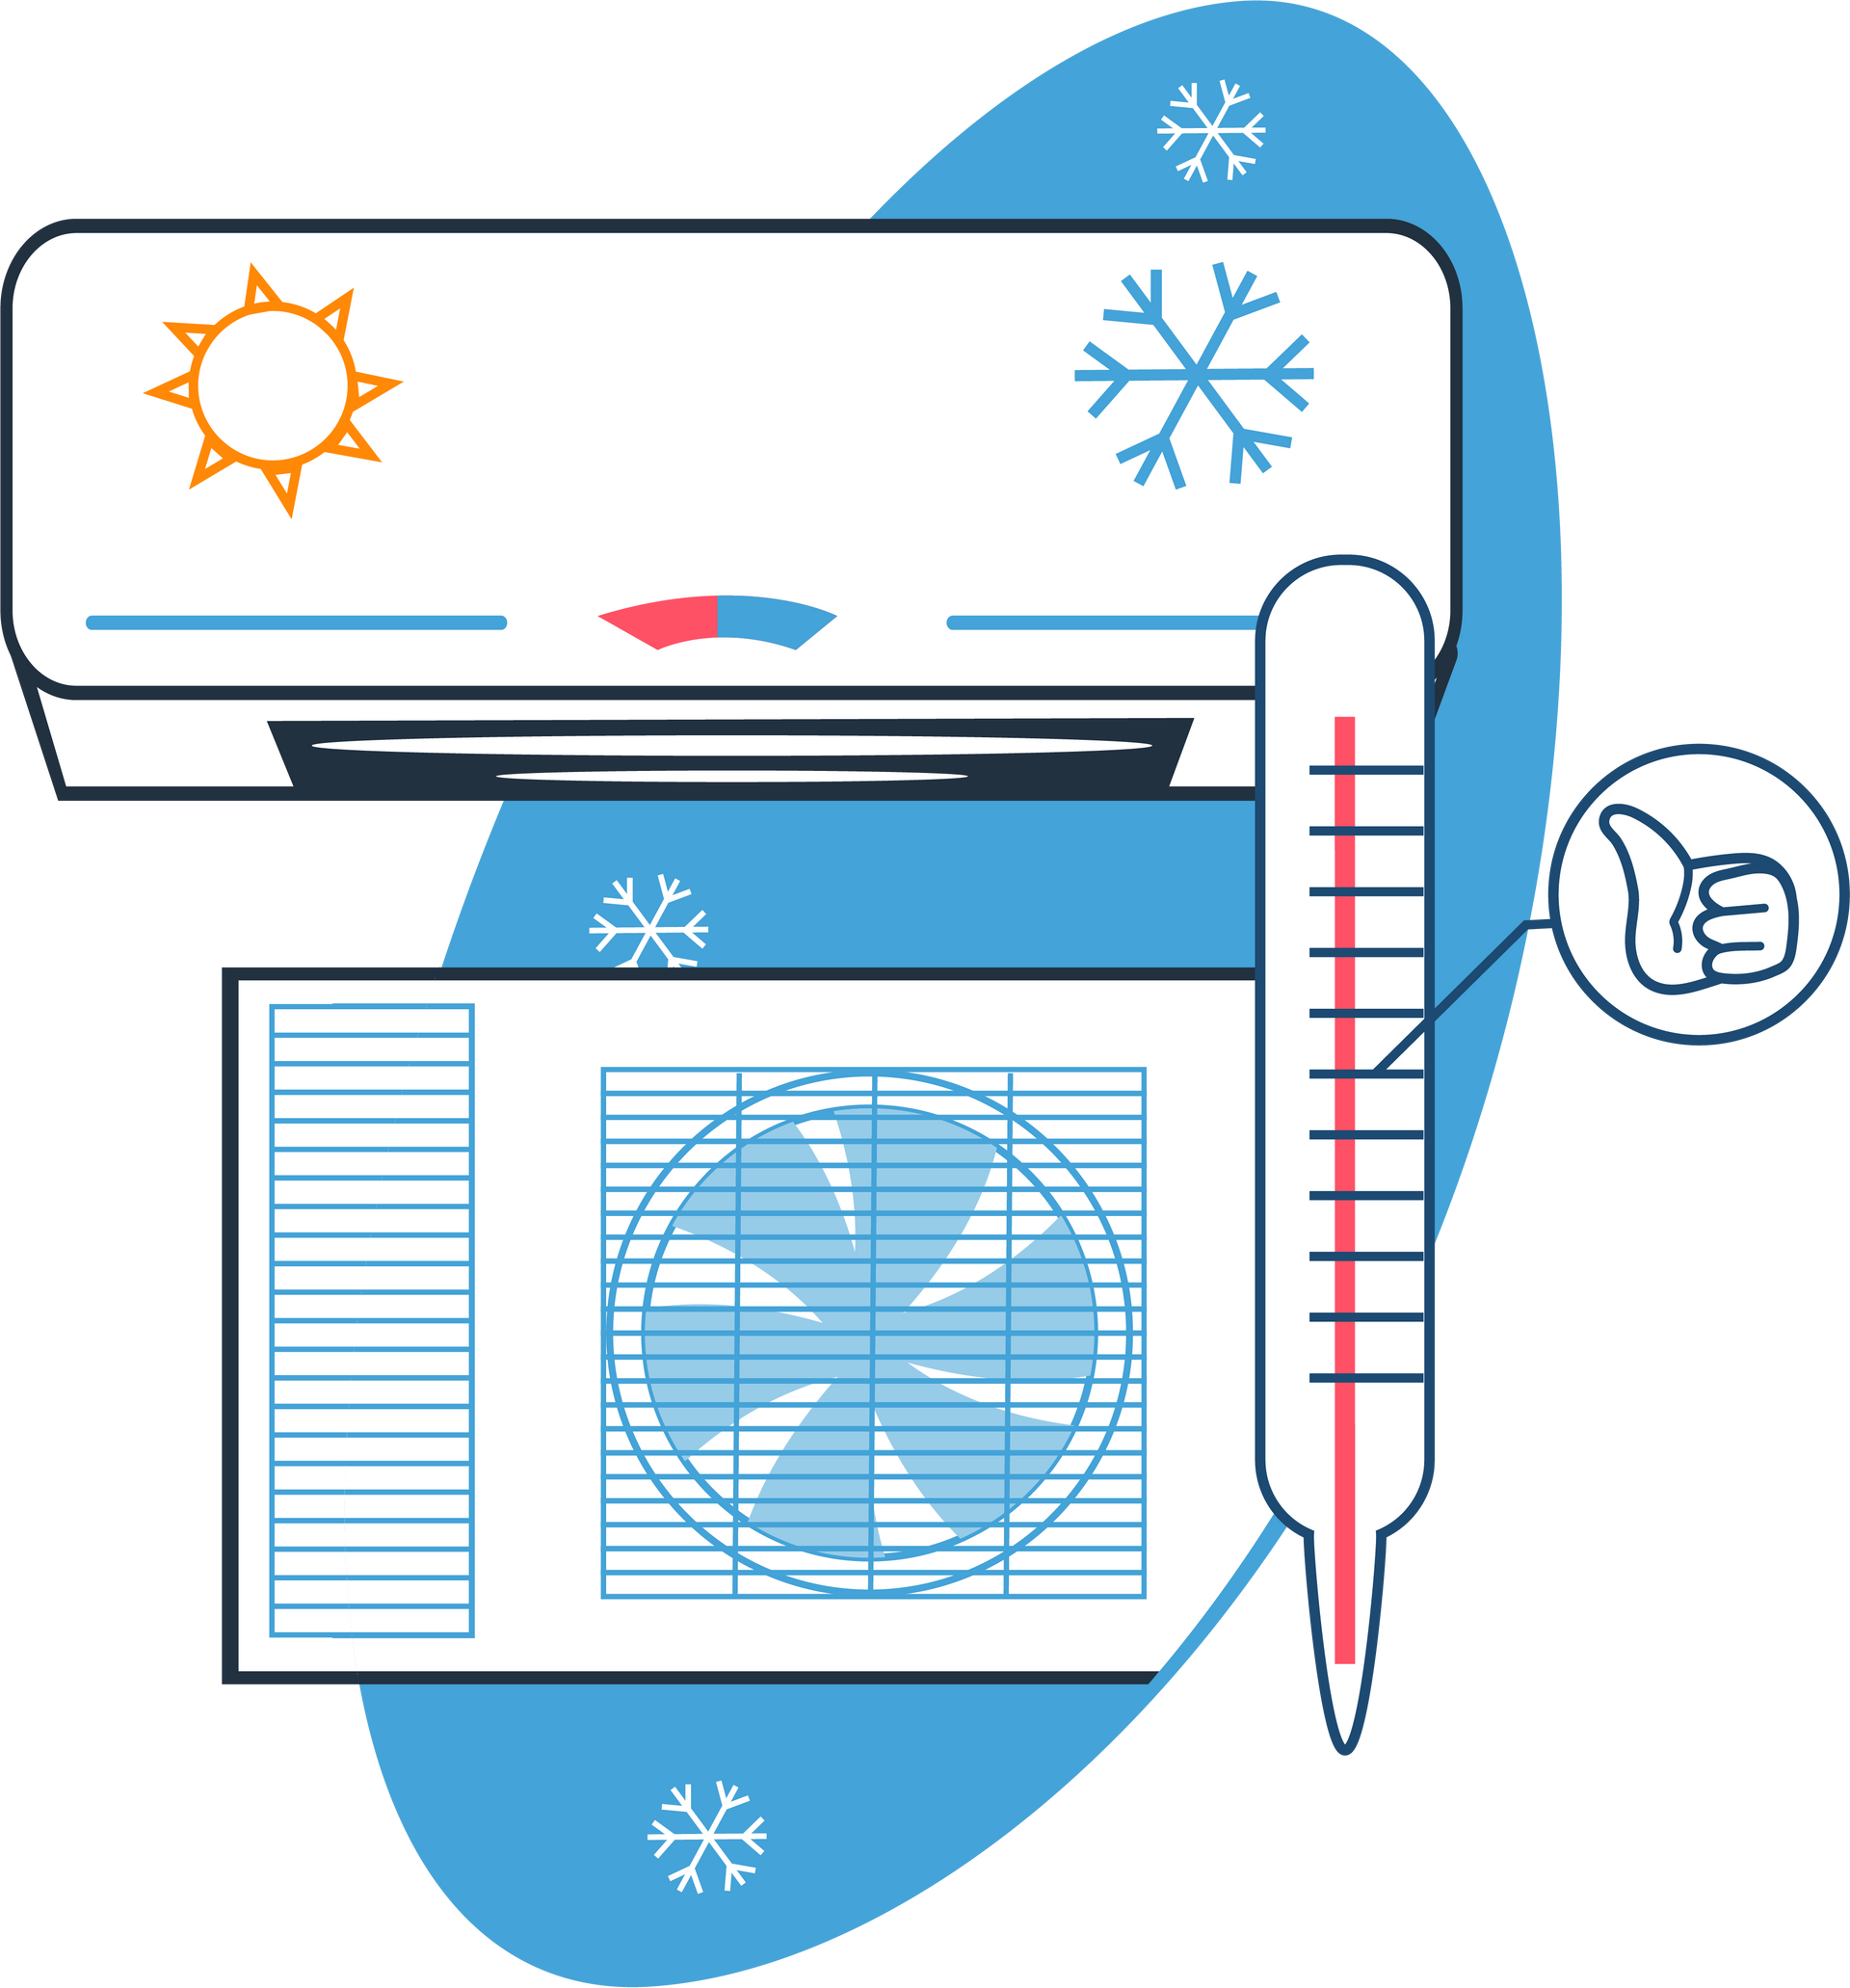 Systèmes de chauffage et climatisation en dessin - Page Installation